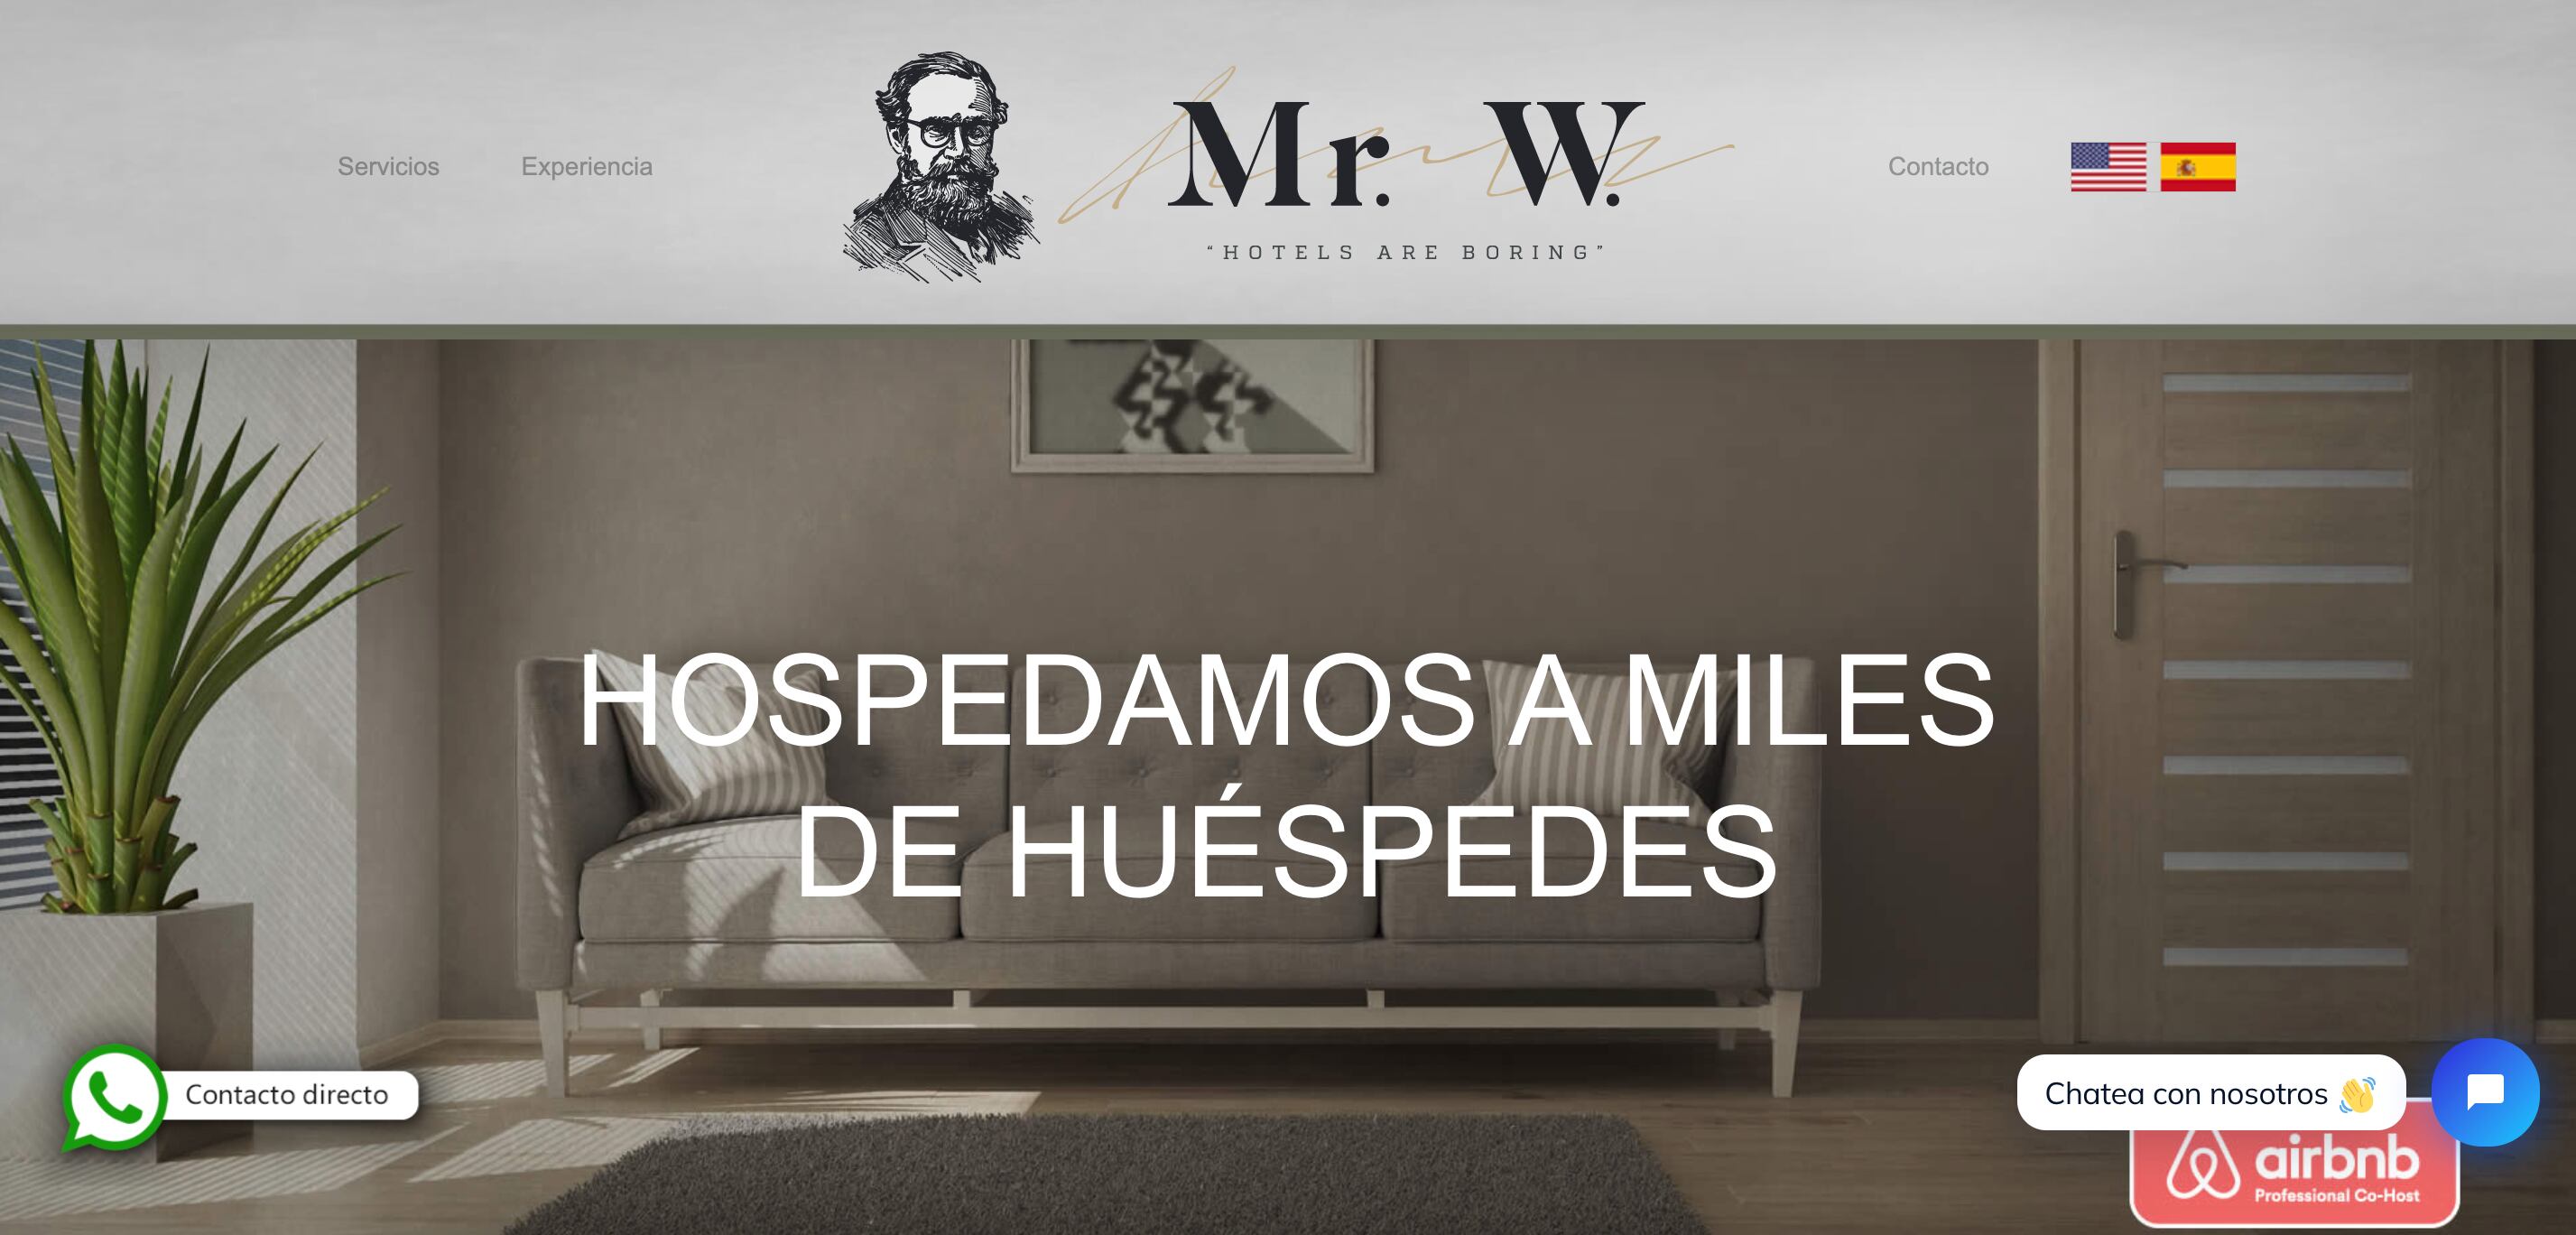 Página web de la empresa Mr. W.